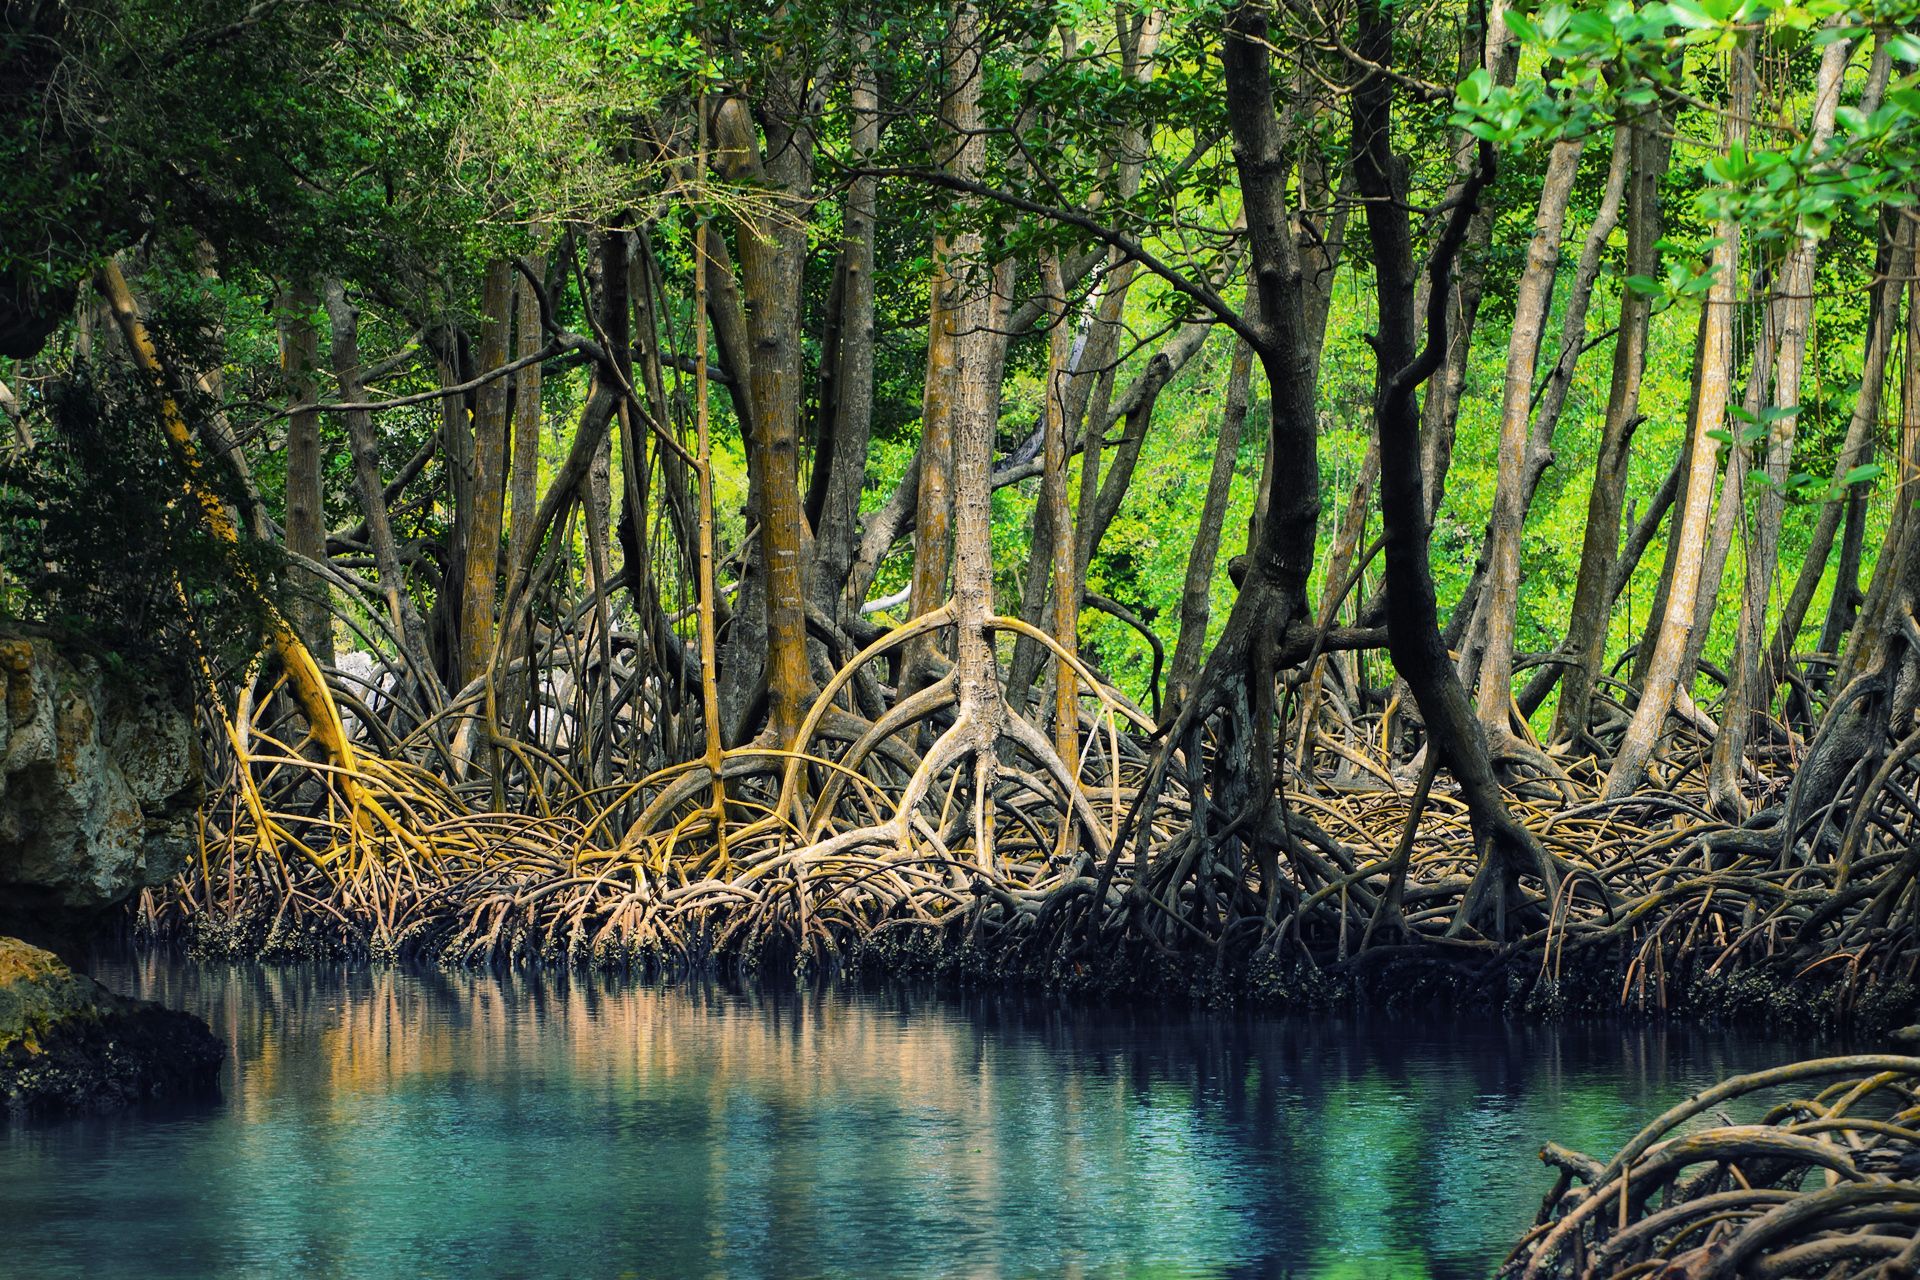 Mangrove Wallpaper. Mangrove Swamp Wallpaper, Mangrove Wallpaper and Mangrove Swamp Background